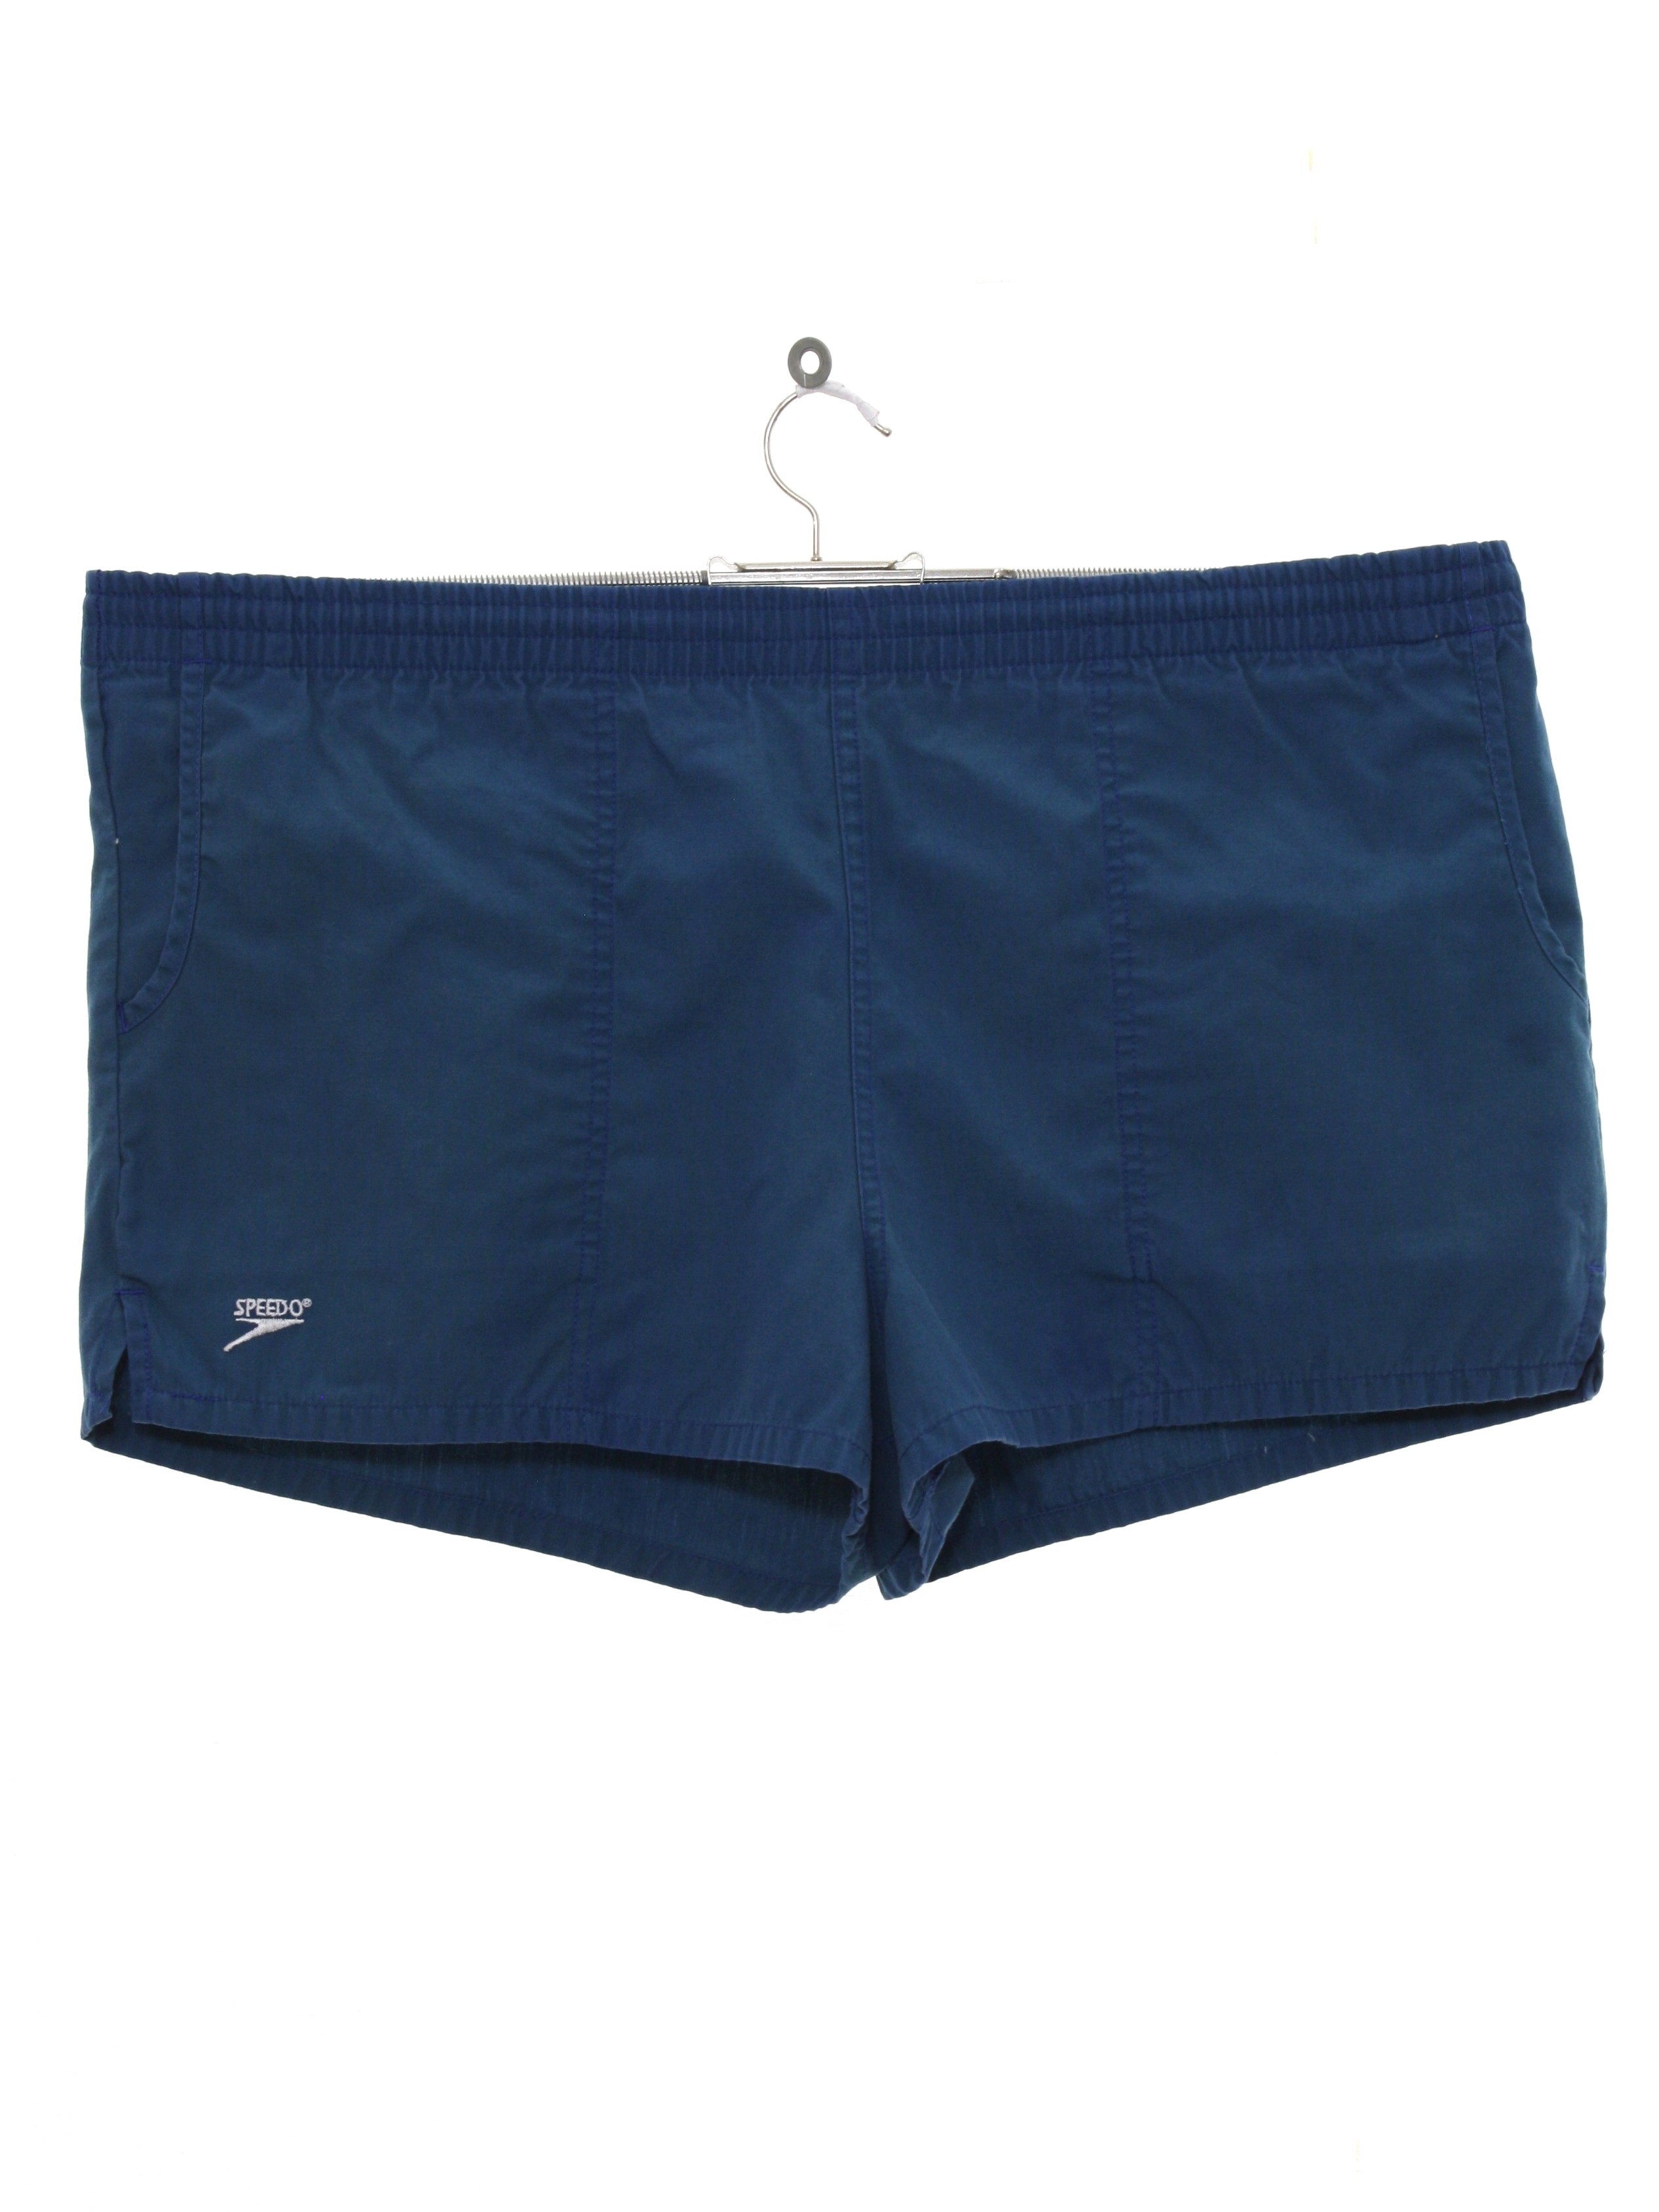 Nineties Vintage Swimsuit/Swimwear: 90s -Speedo- Mens dark slate blue ...